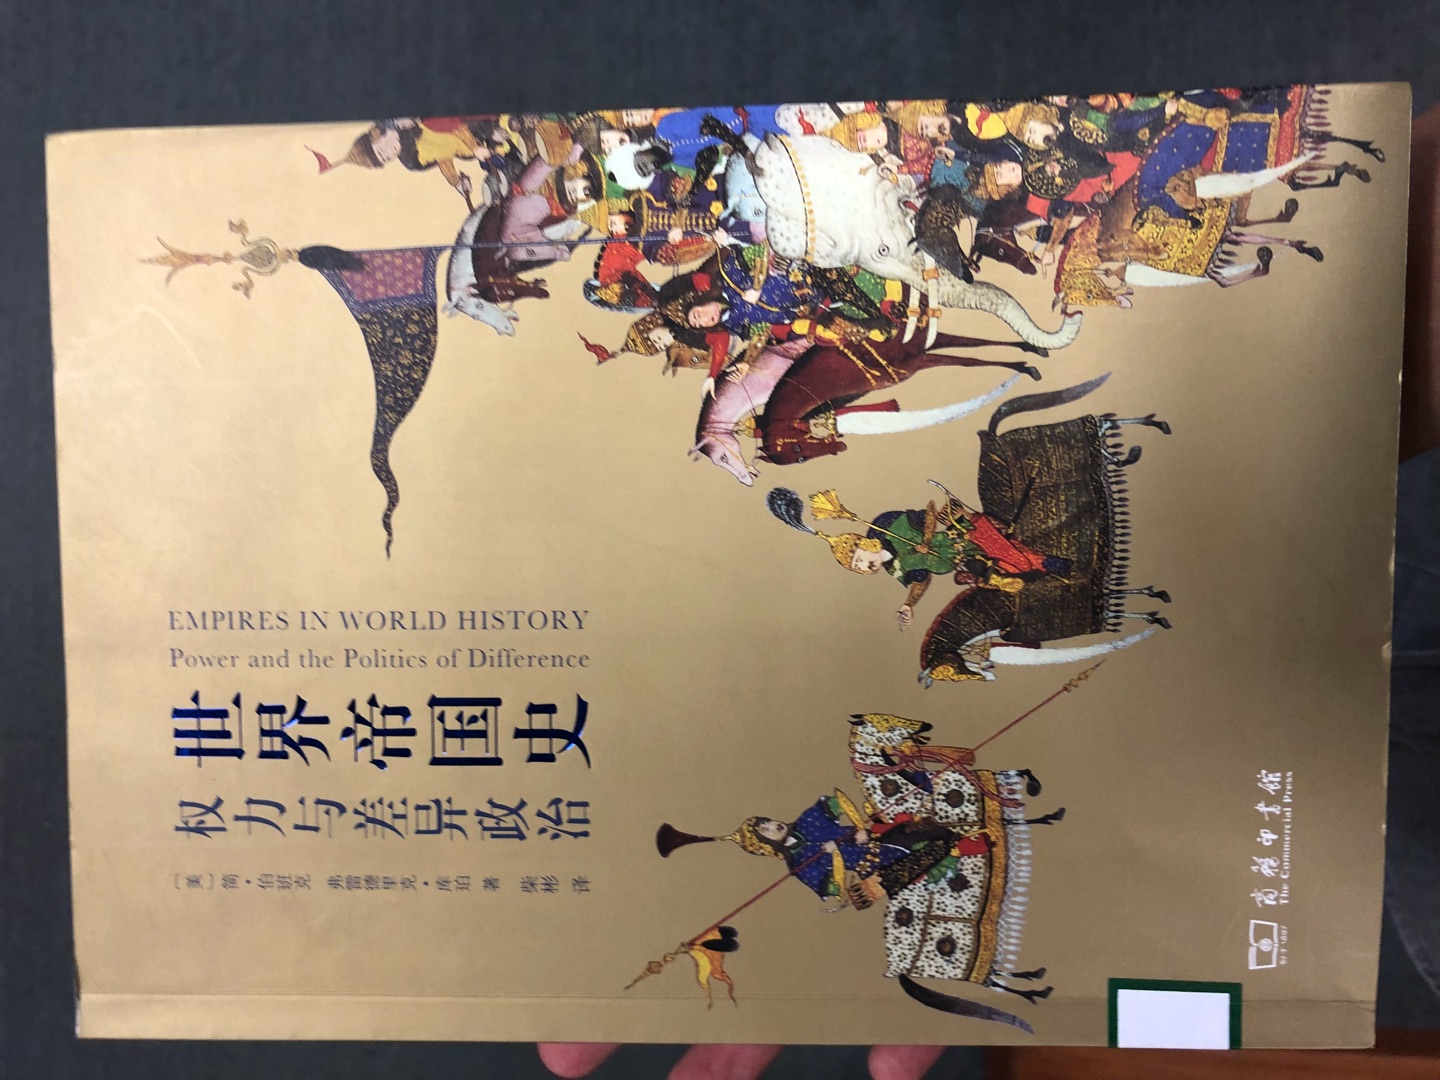 世界帝国史，早听到这书了，先到国图去翻看了一下才买的，着重看了下蒙古史部分。